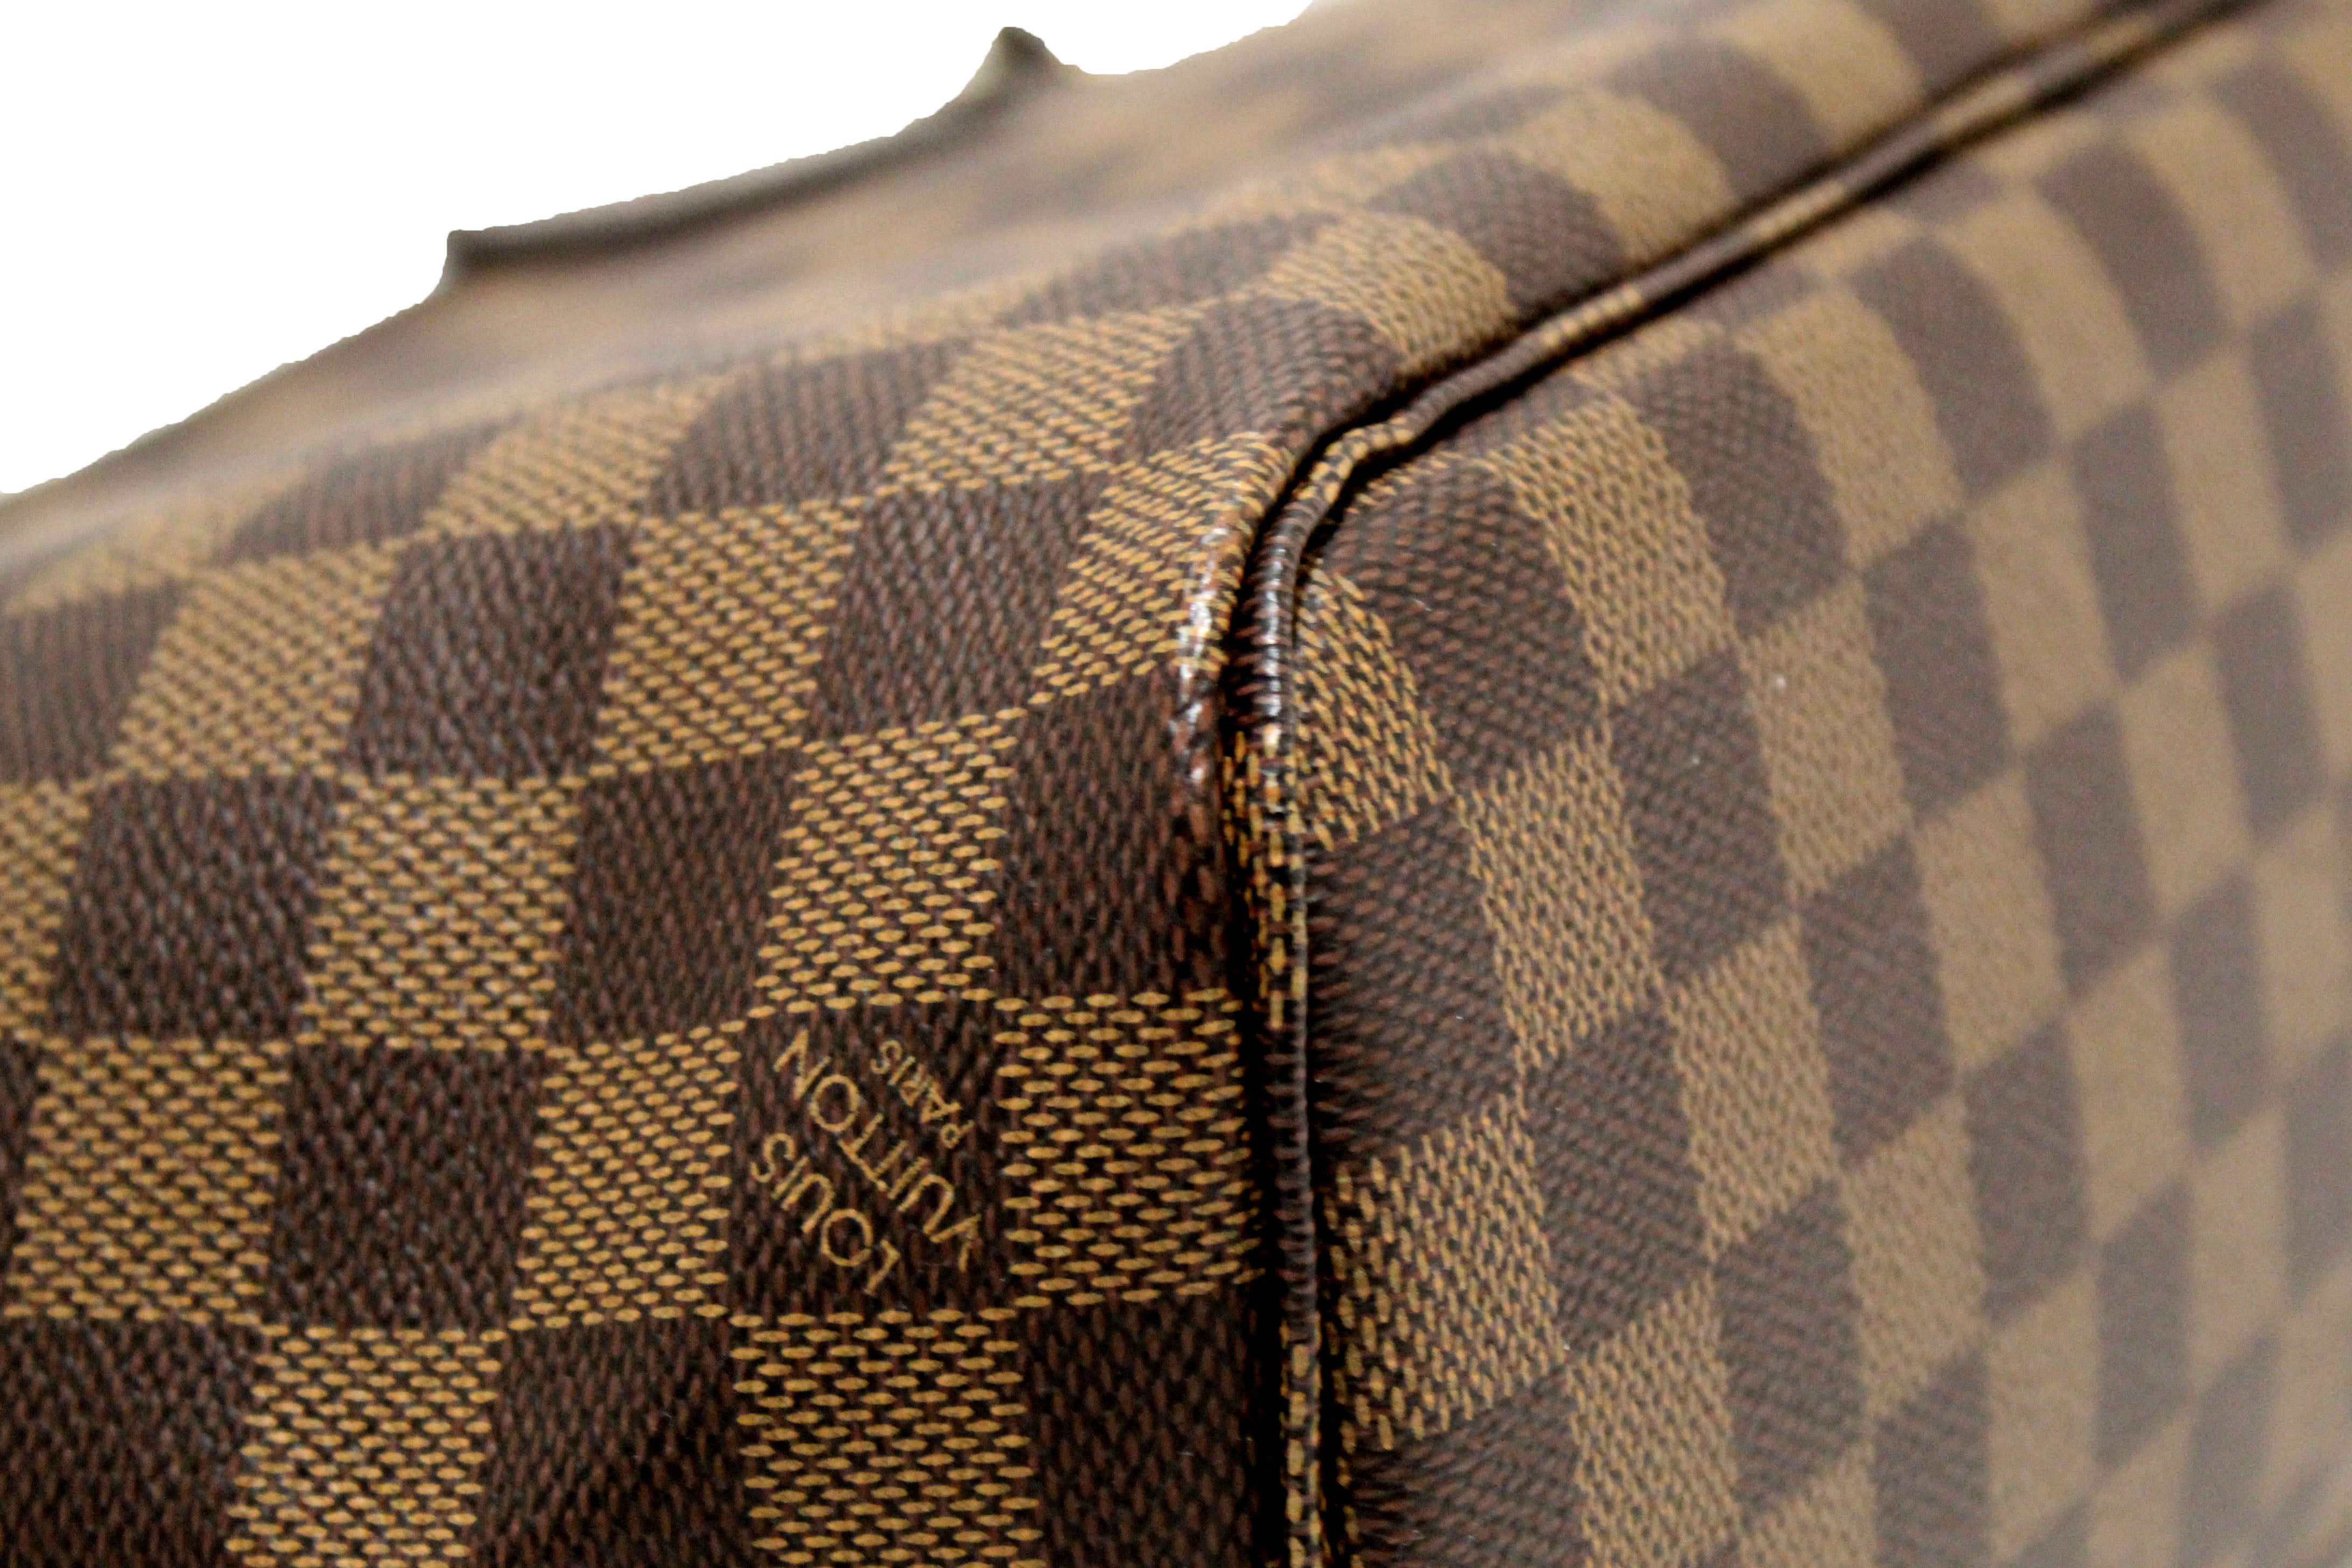 Authentic Louis Vuitton Damier Ebene Canvas Neverfull PM Shoulder Tote Bag